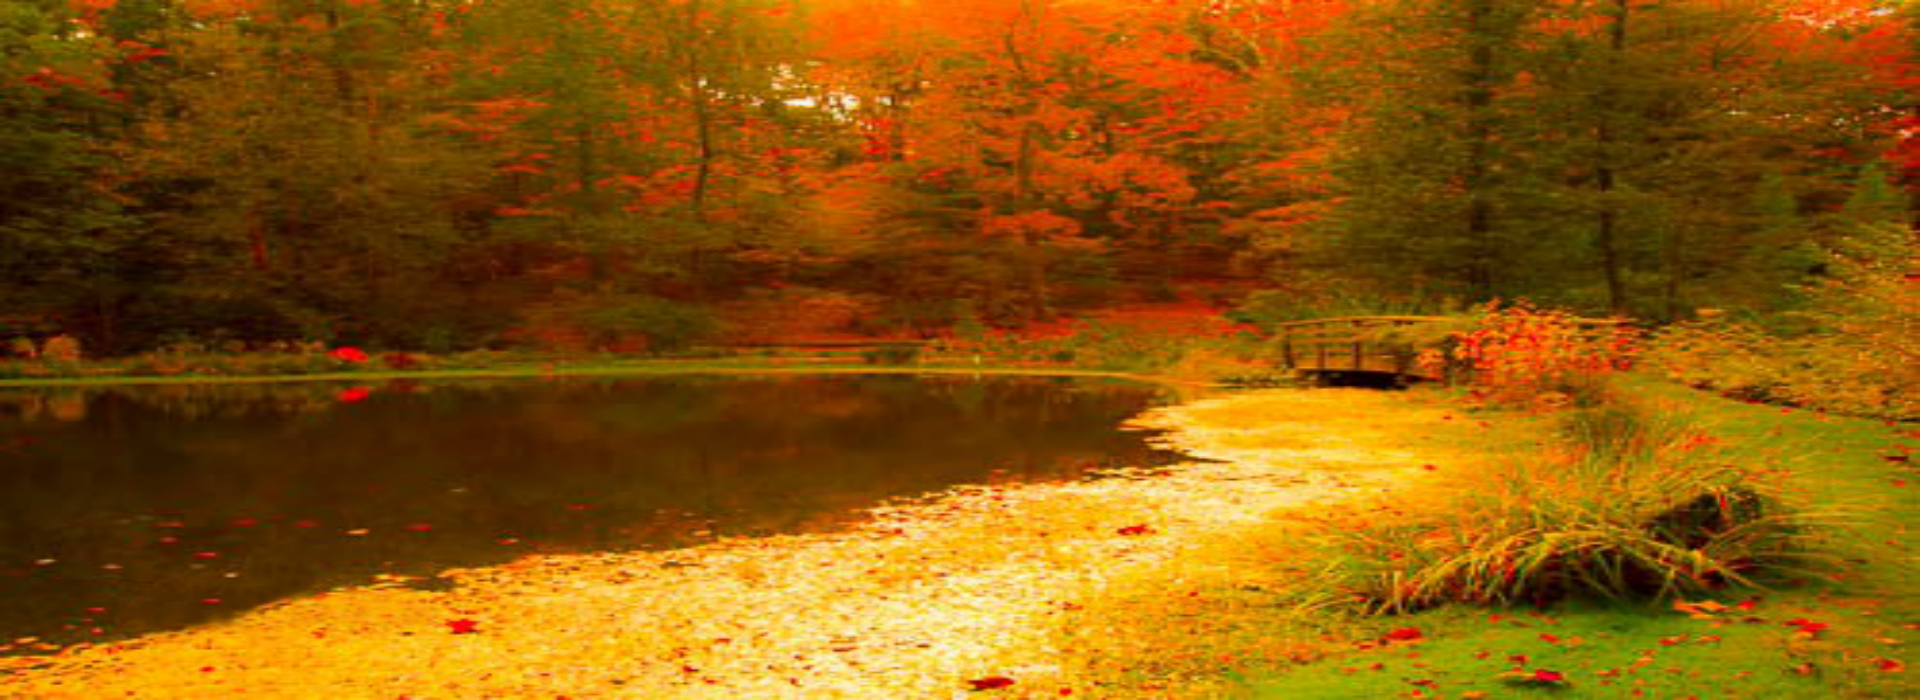 WEBSITE - Buck Gardens Pond Fall